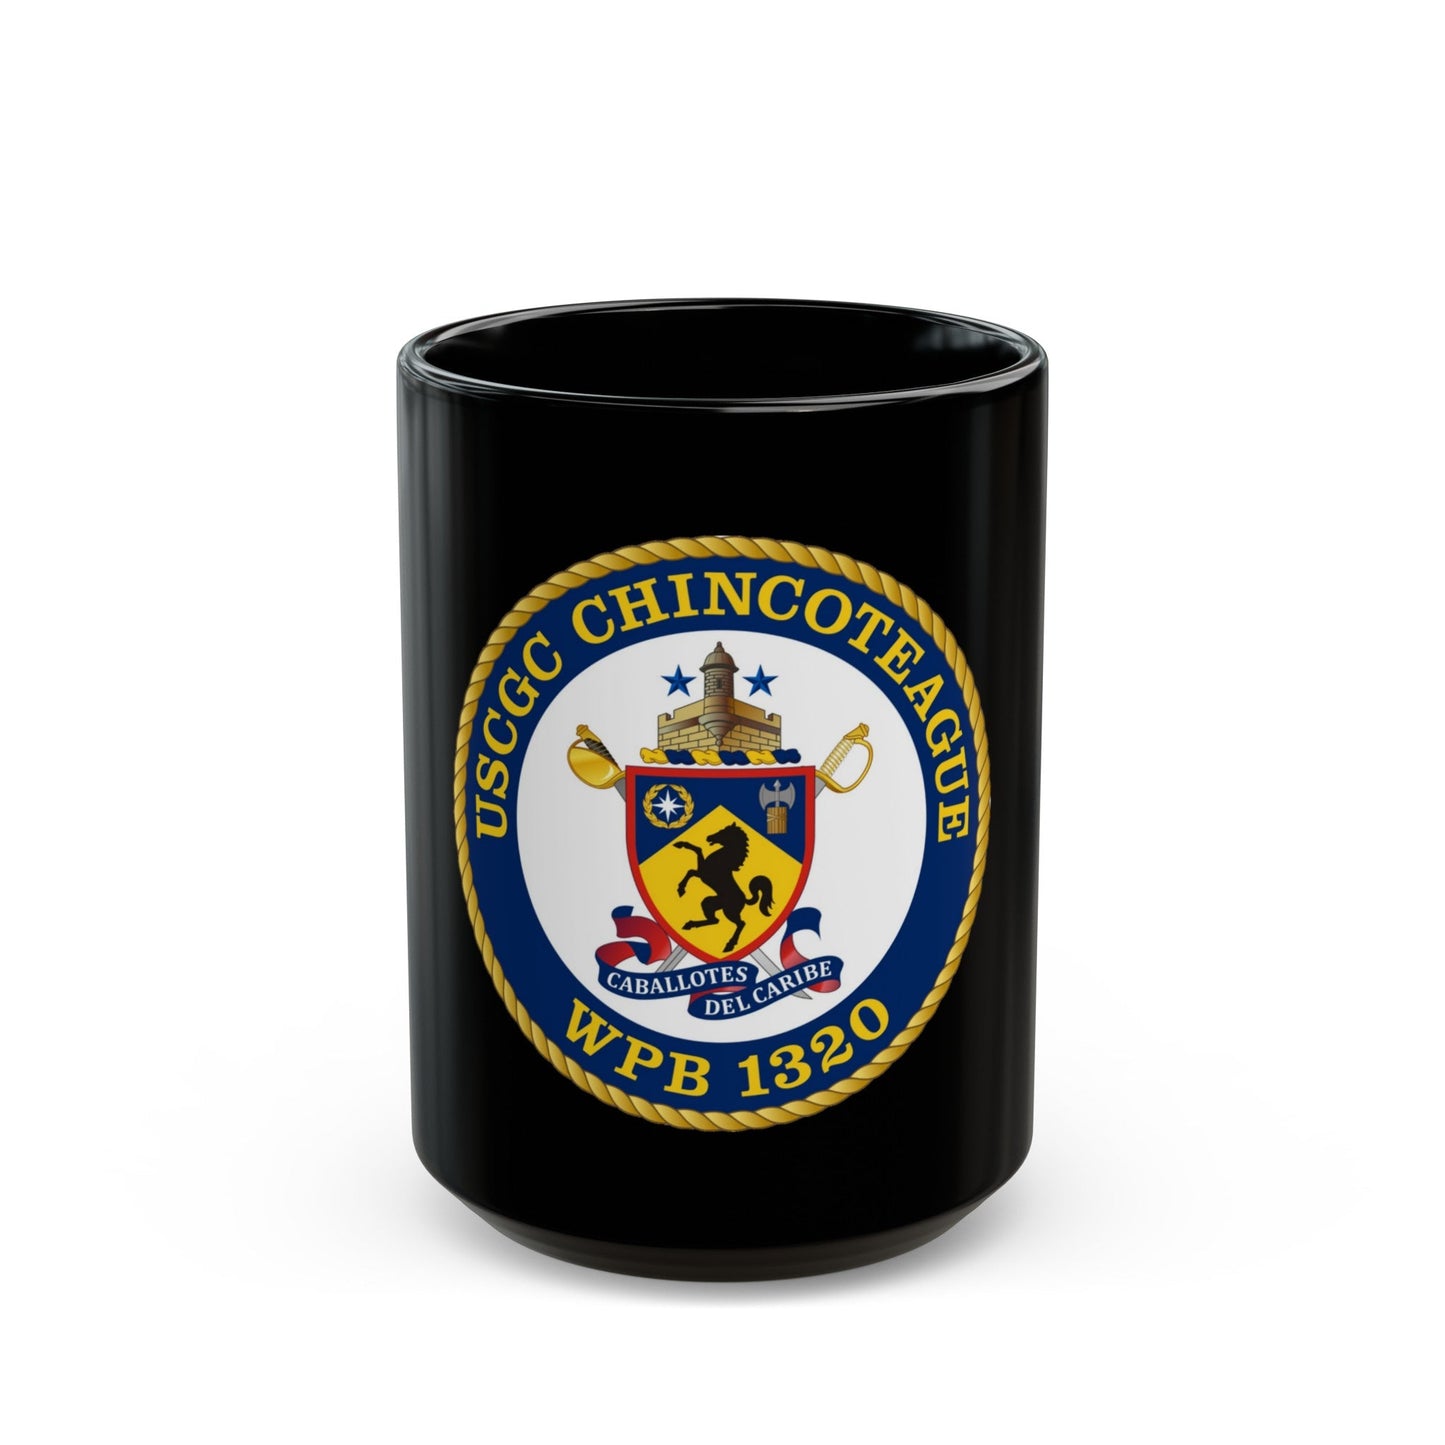 USCGC Chincoteague WPB 1320 (U.S. Coast Guard) Black Coffee Mug-15oz-The Sticker Space